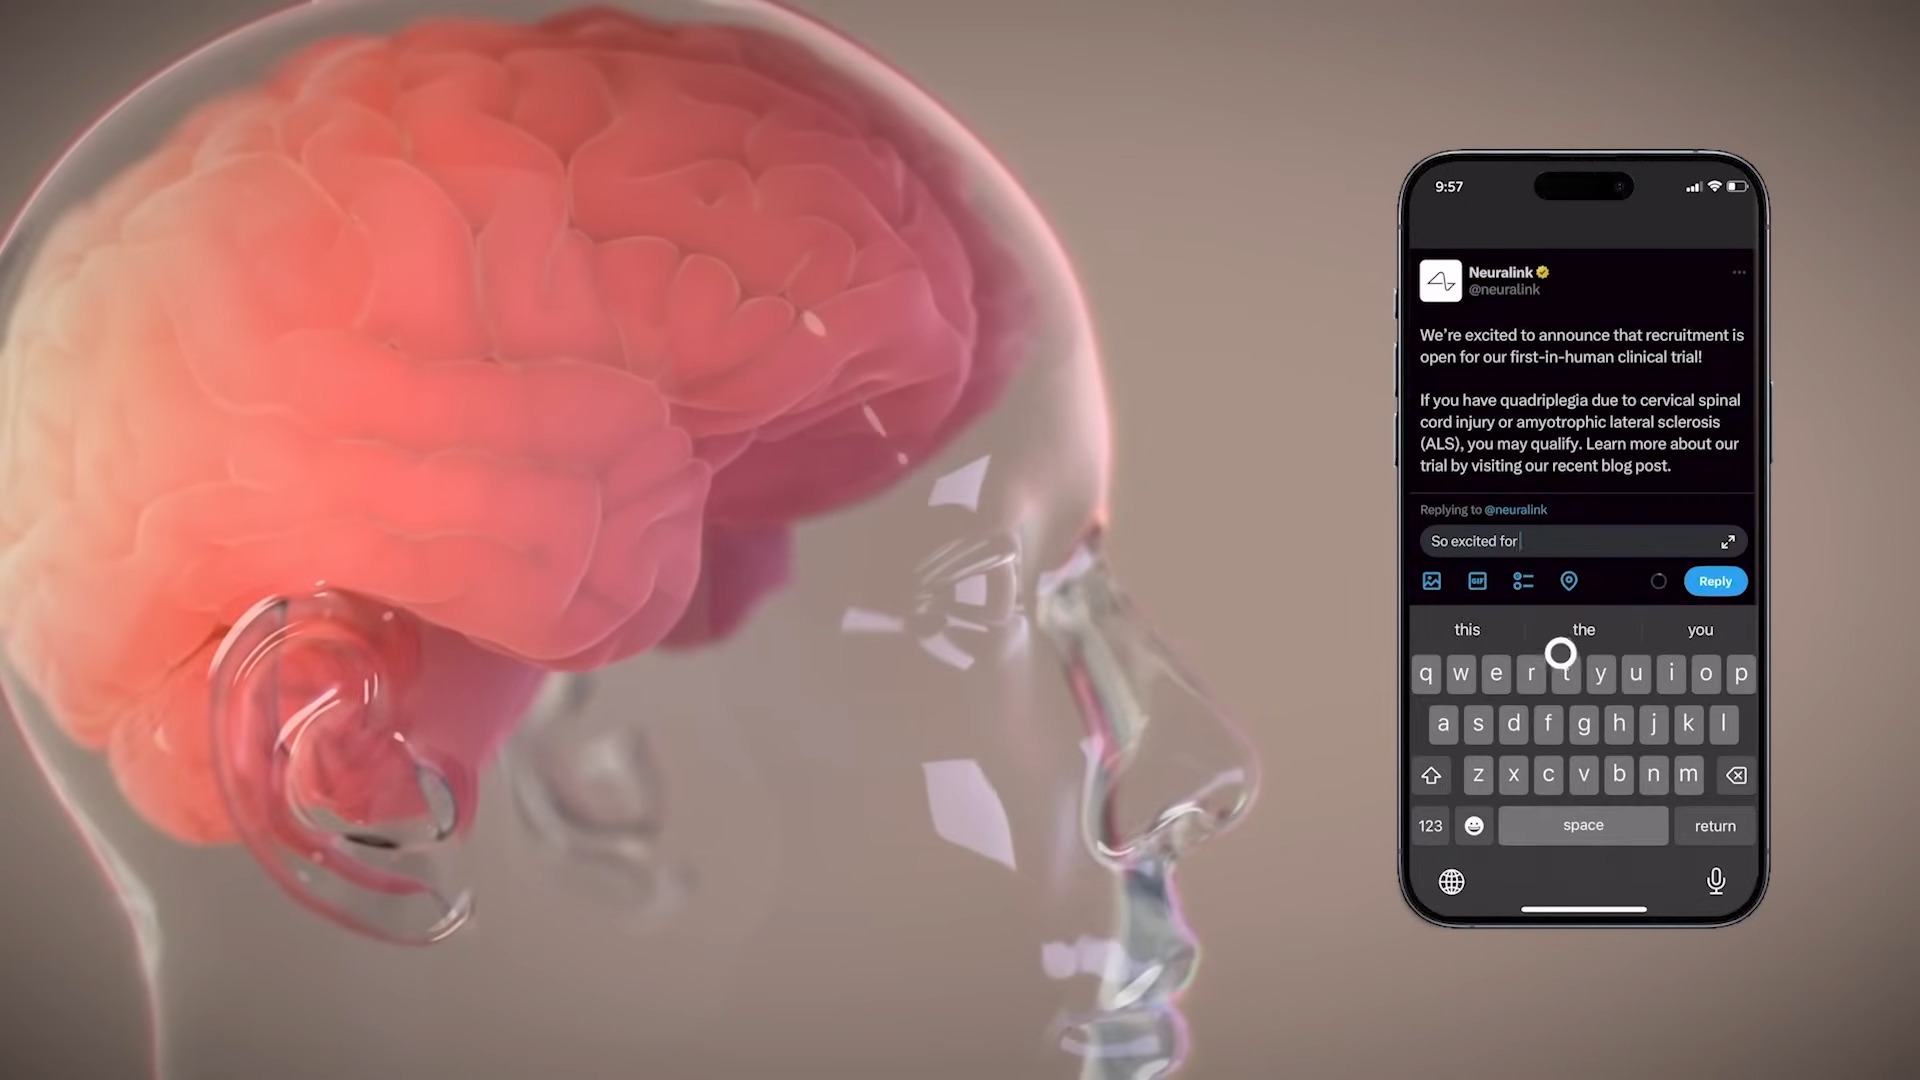 馬斯克宣布 Neuralink 完成首位晶片植入人腦的人體實驗 - 電腦王阿達